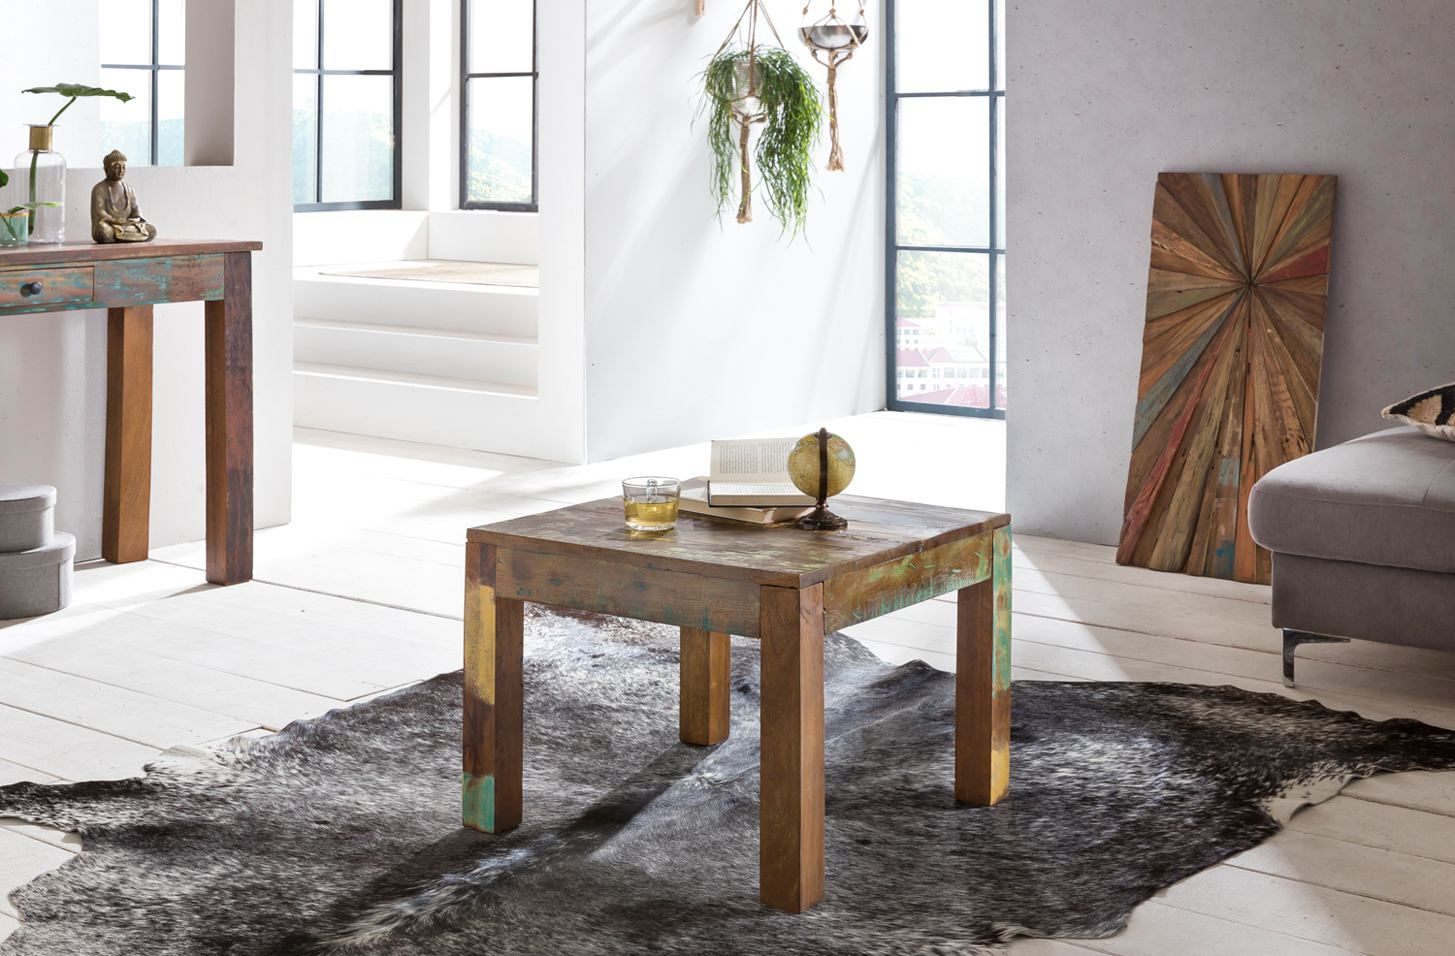 Couchtisch KALKUTTA 45 x 45 x 45 cm  Massivholz Beistelltisch Shabby-Chic   Wohnzimmer Tisch aus Bootsholz  Sofatisch quadratisch